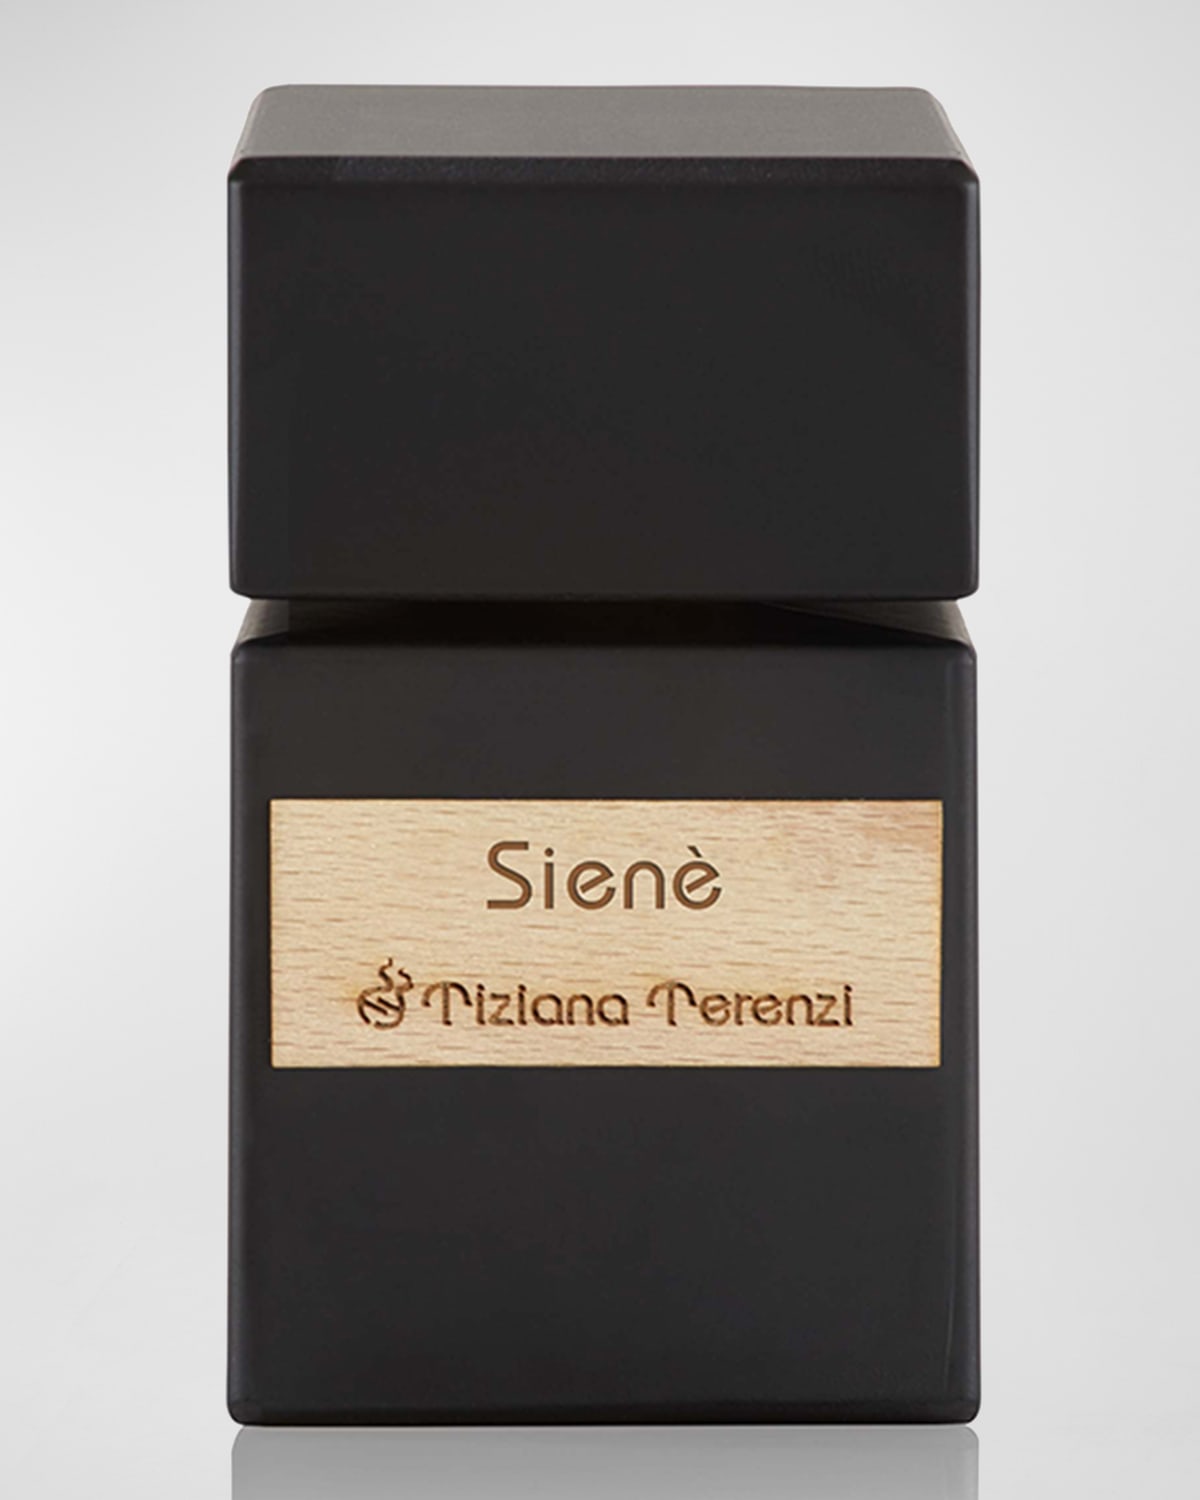 Siene Extrait de Parfum, 3.4 oz.